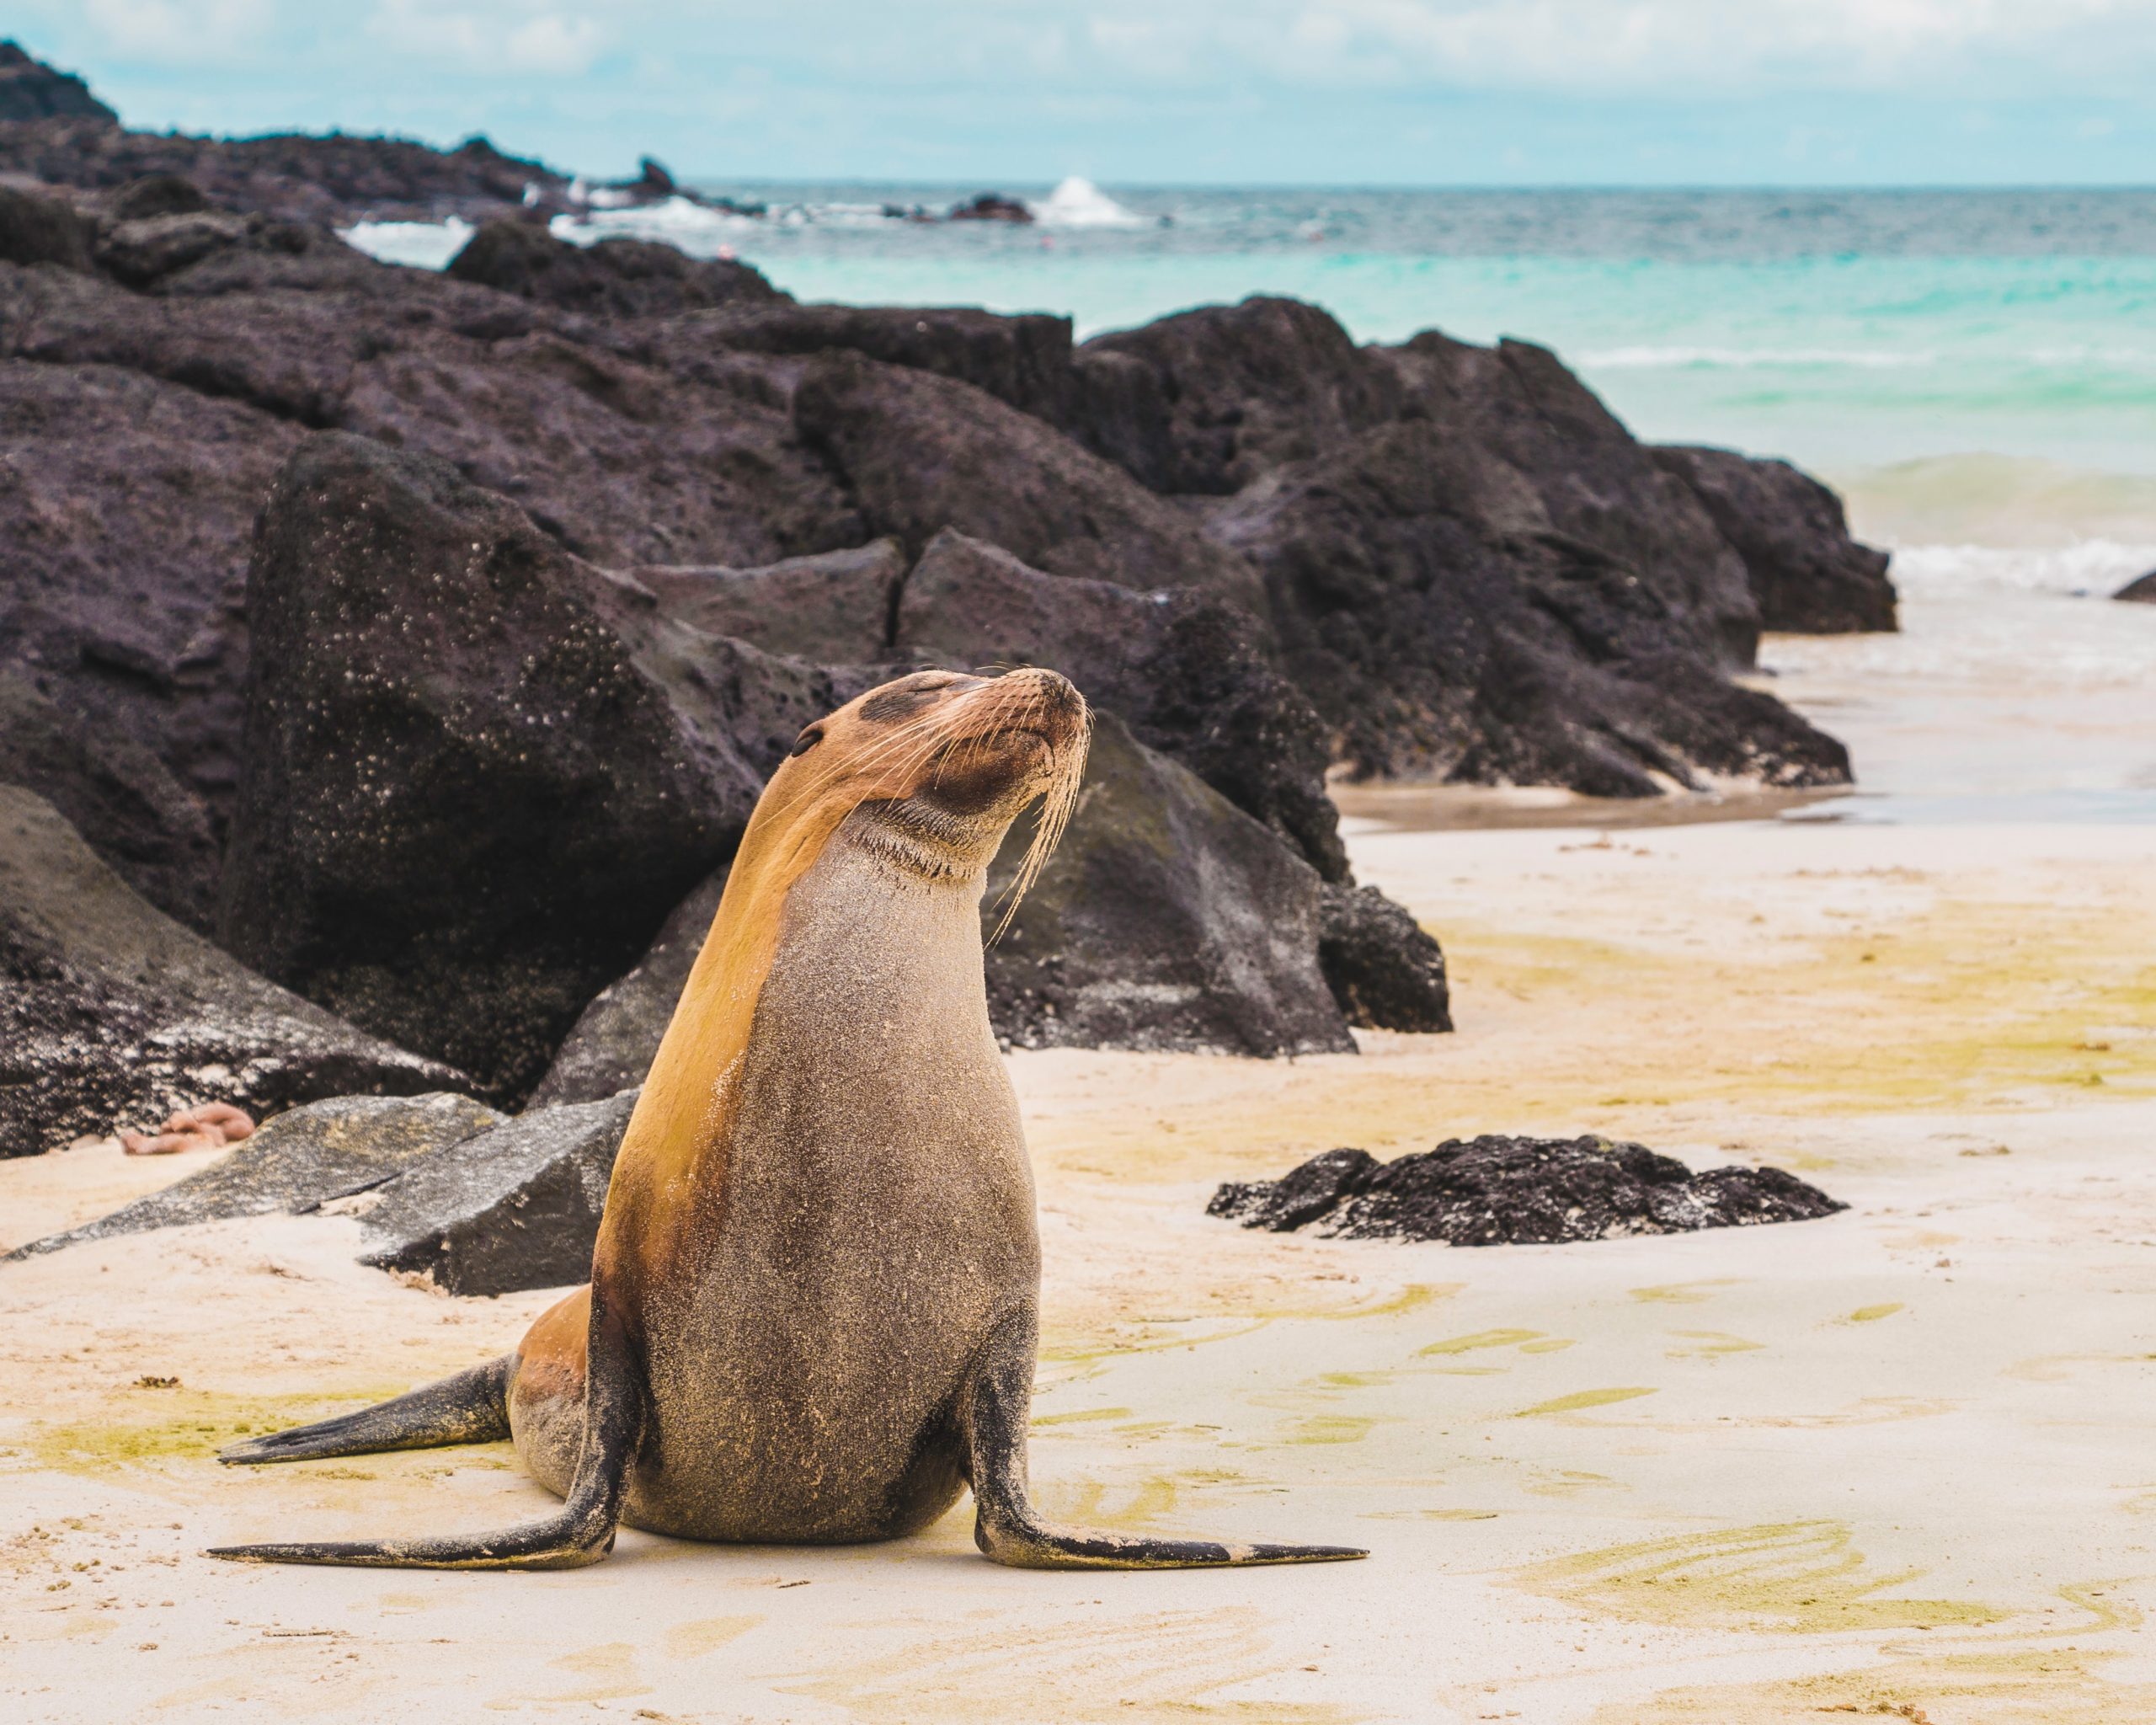 Parque Nacional de las Islas Galápagos